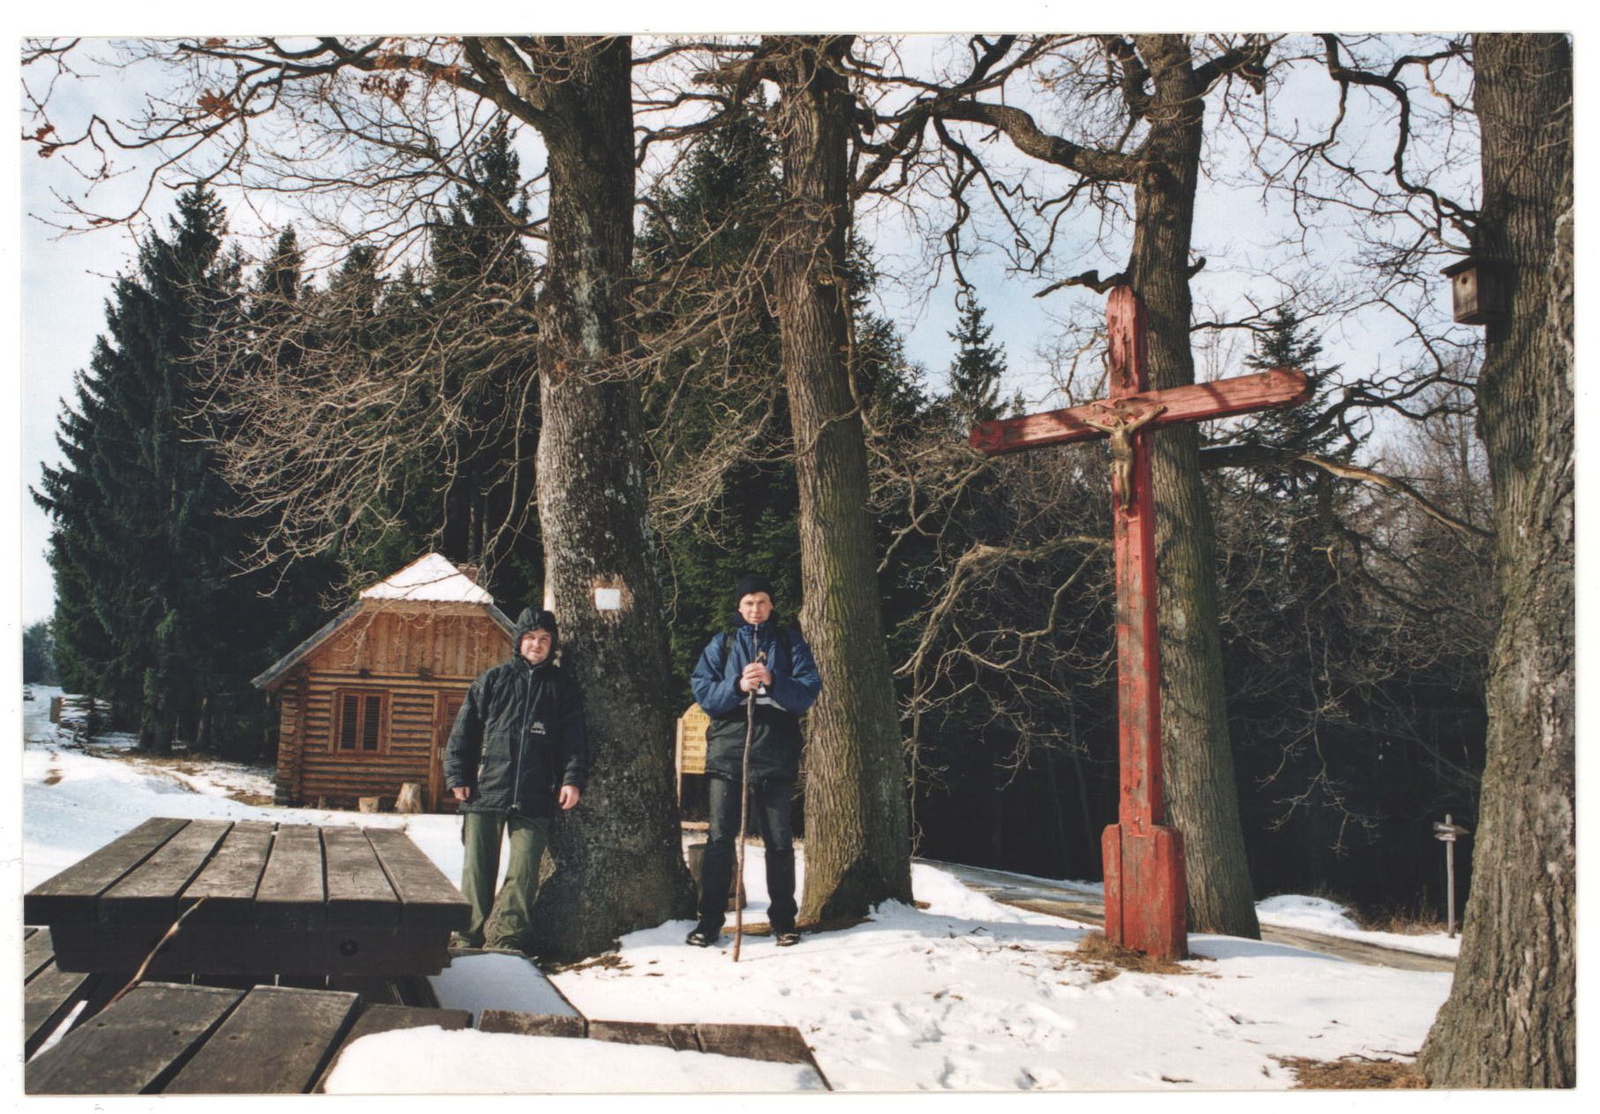 106 Vörös keresztnél, Kőszegi-hegység 2003-02-15